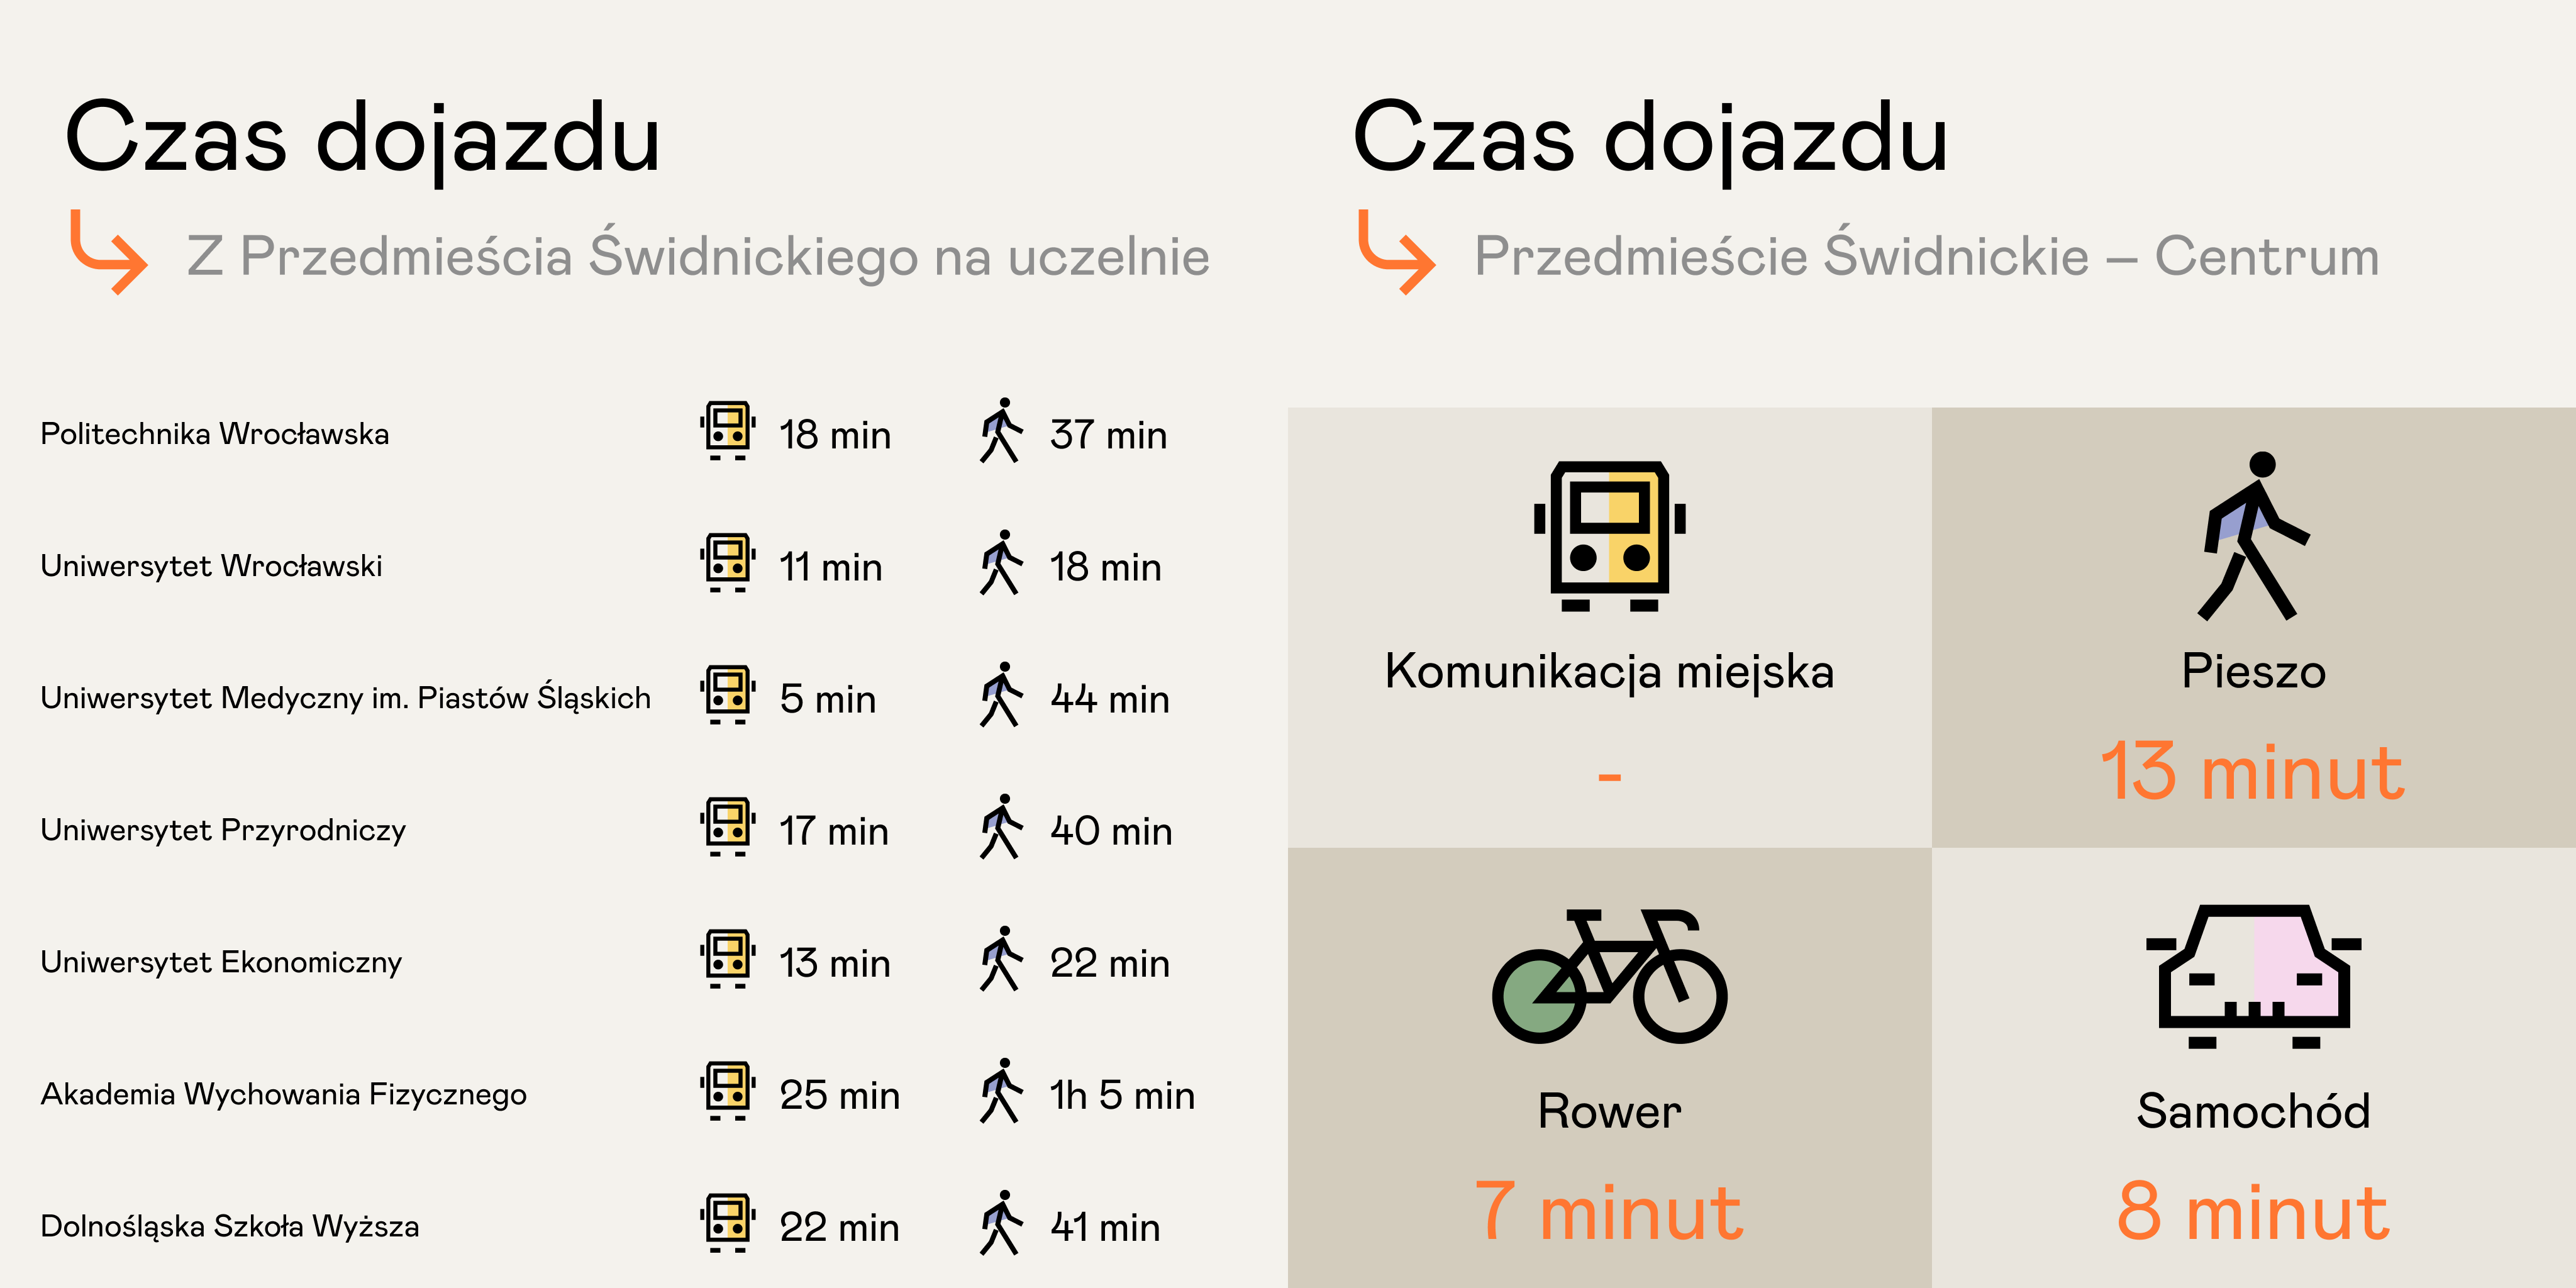 Czas dotarcia z dzielnicy Przedmieście Świdnickie we Wrocławiu do centrum oraz wybranych uczelni wyższych